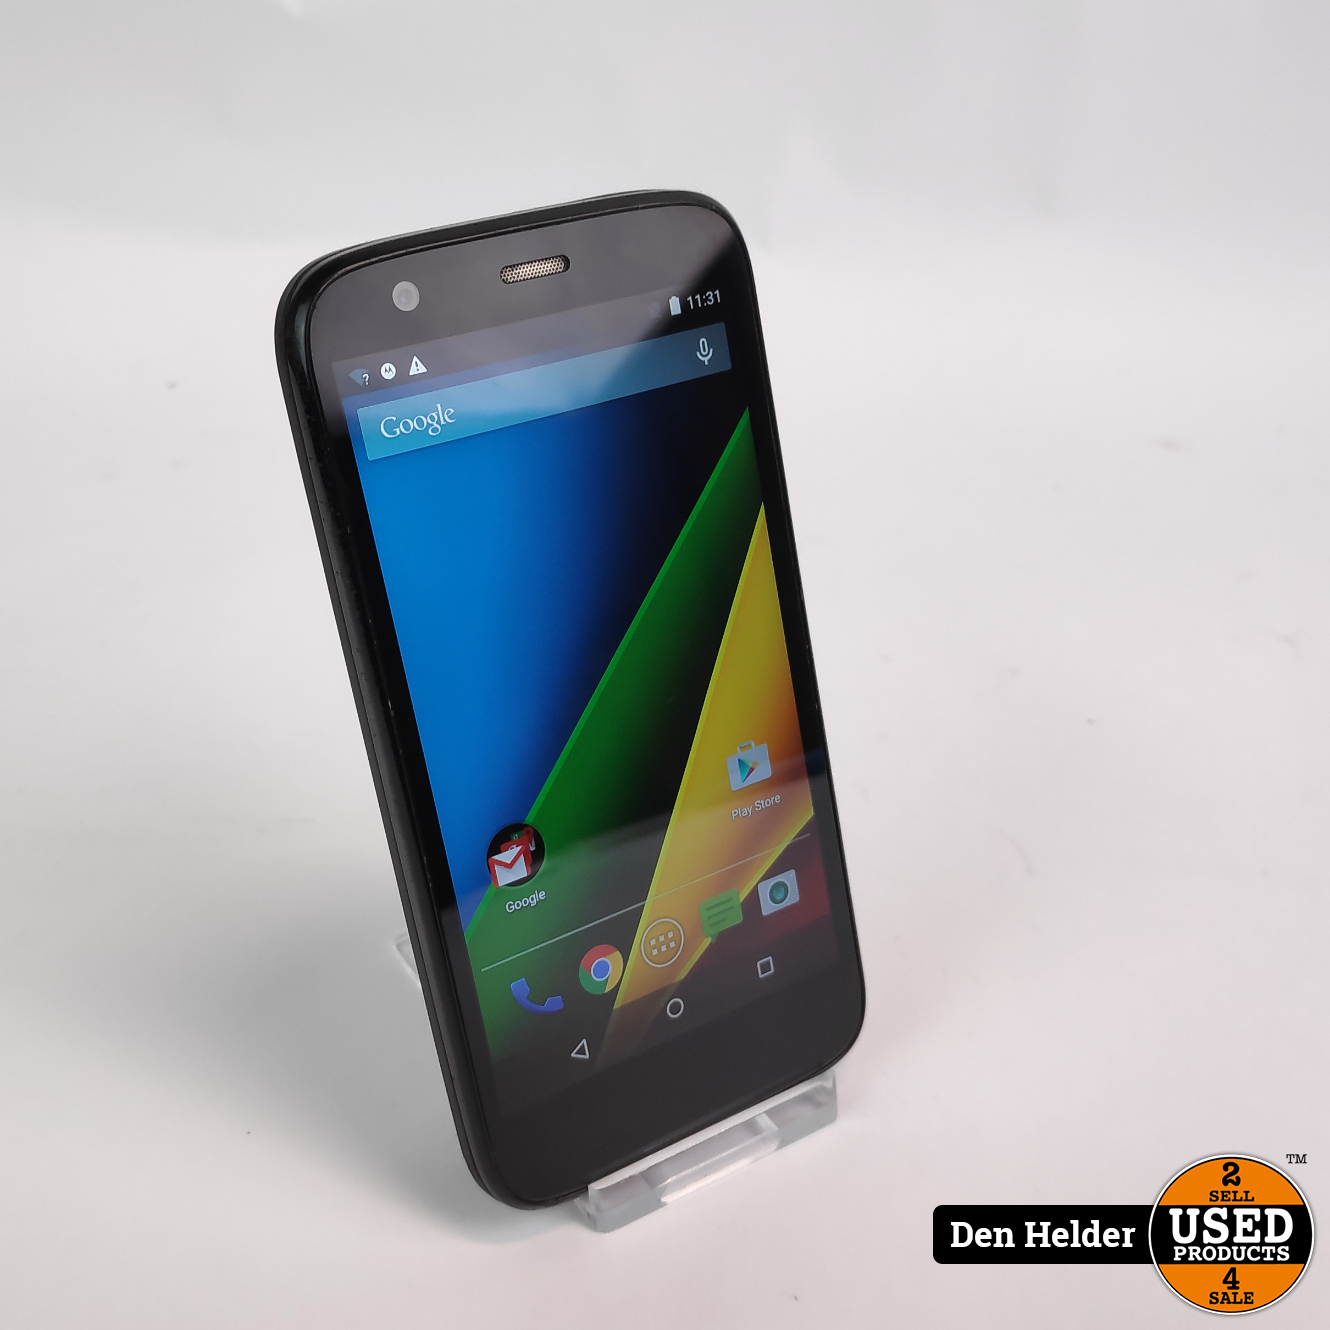 Retoucheren paradijs volwassene Motorola Moto G 8GB Android 5 - In Goede Staat - Used Products Den Helder